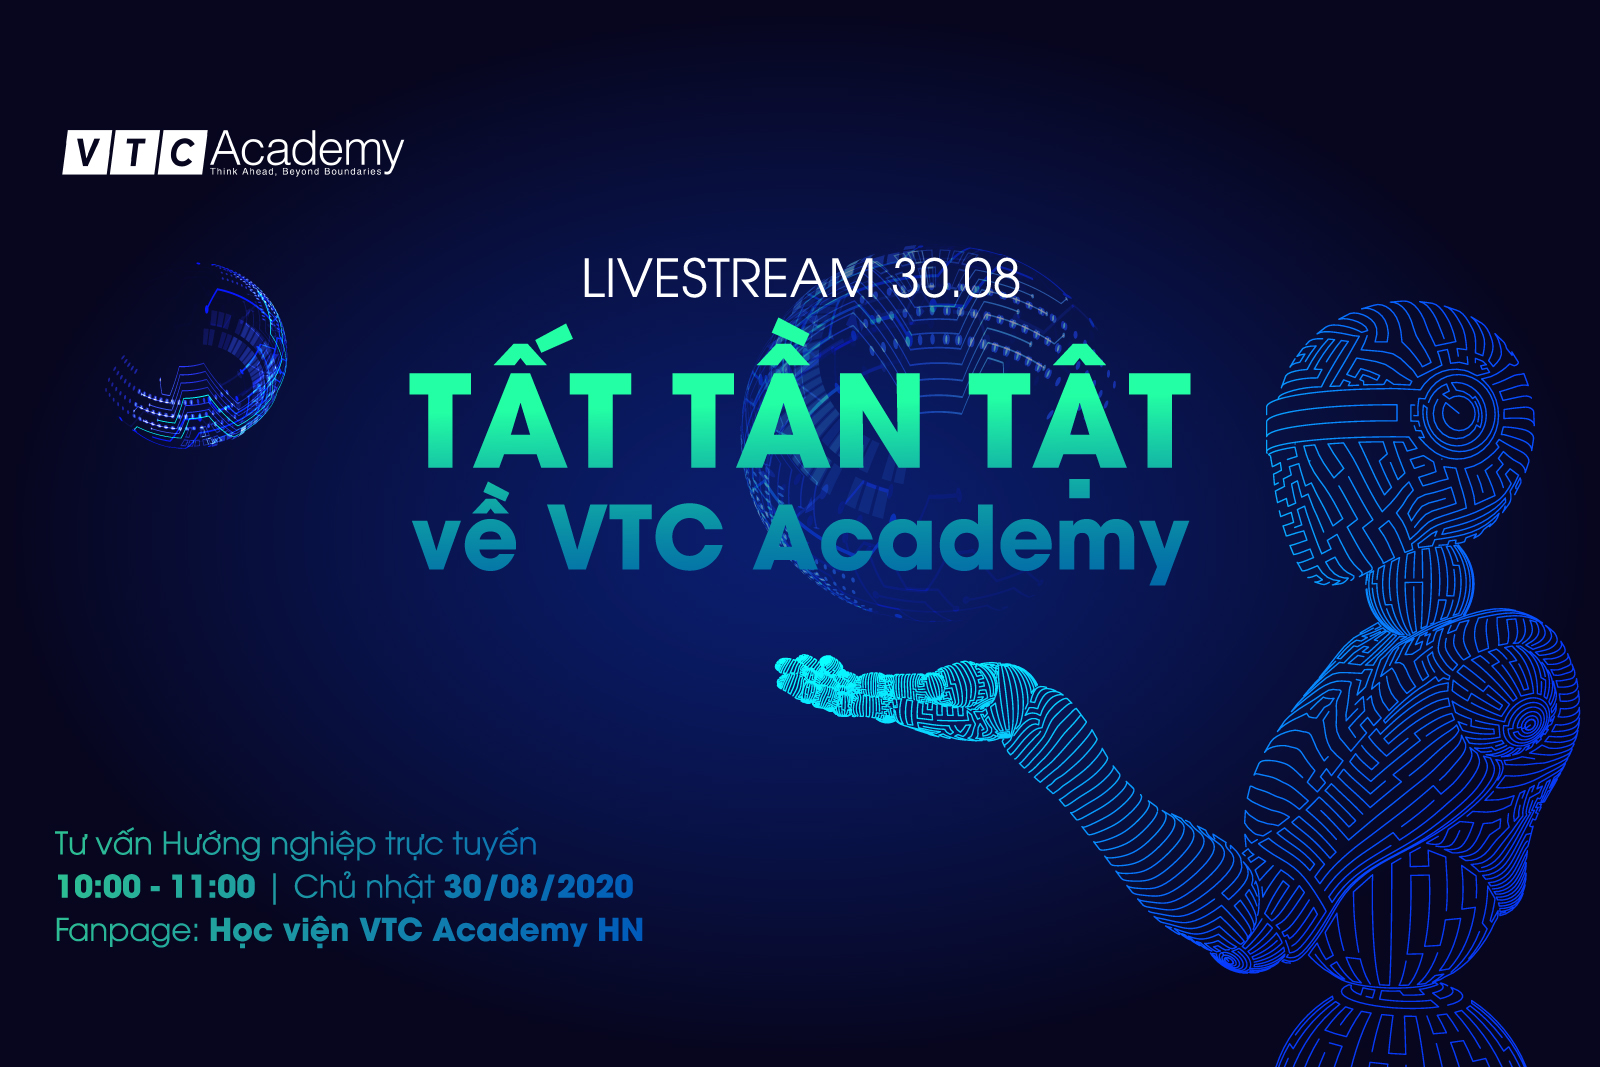 Tư vấn Hướng nghiệp trực tuyến “Tất tần tật về VTC Academy”